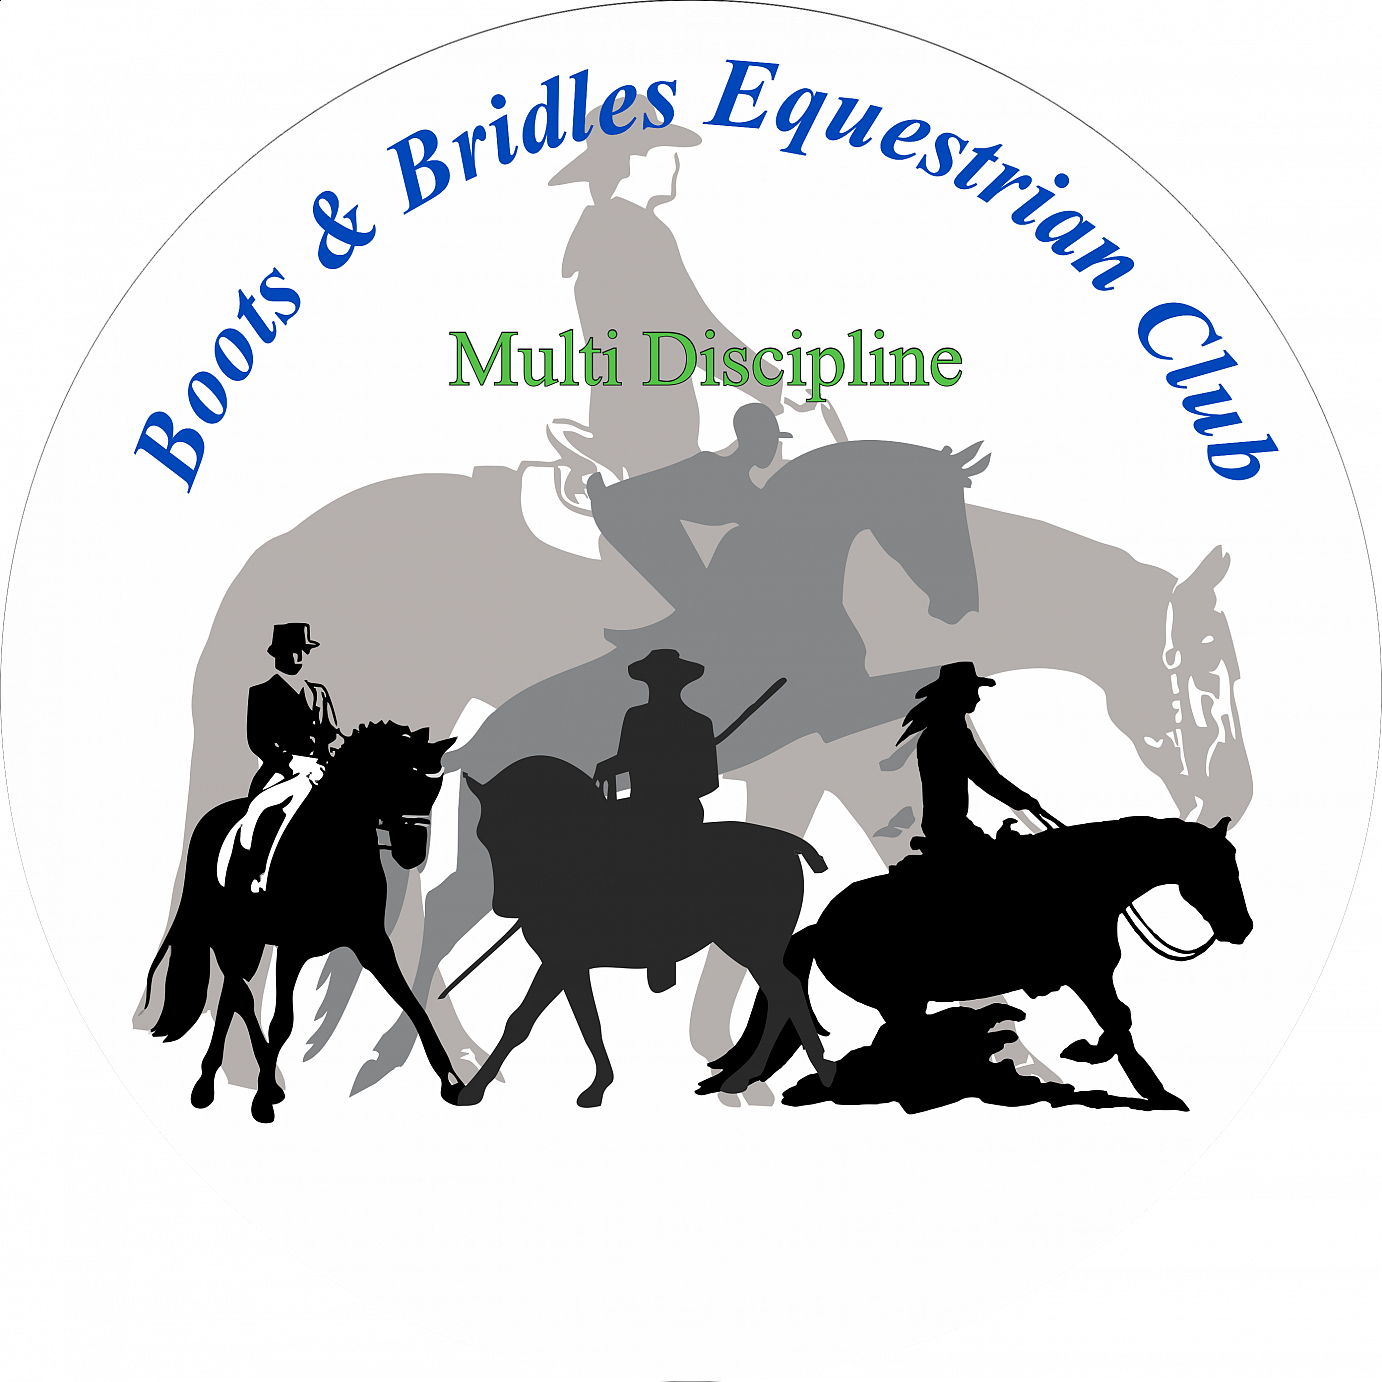 Boots & Bridles Equestrian Club